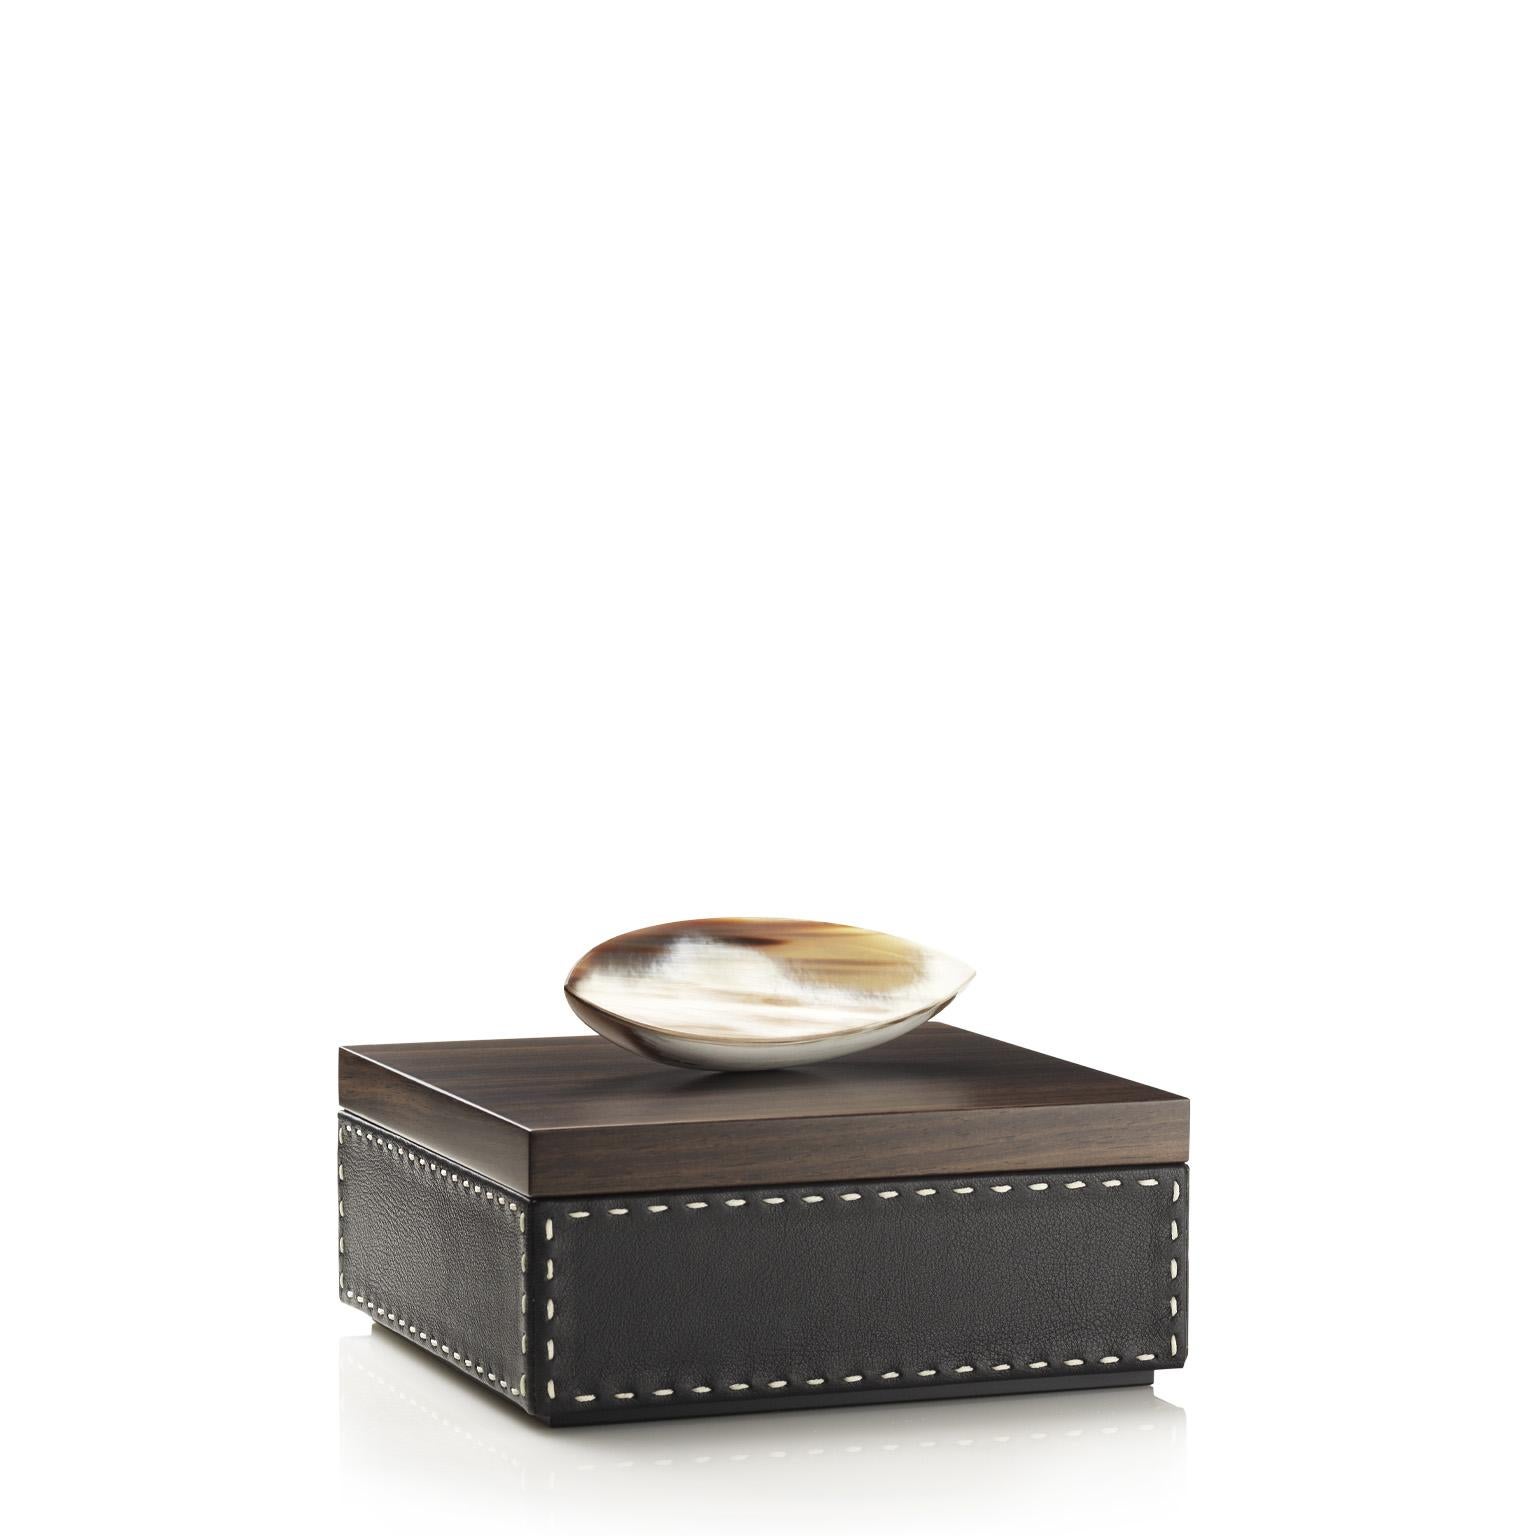 Contemporary Capricia Square Box in Pebbled Leather with Handle in Corno Italiano, Mod. 4475 For Sale